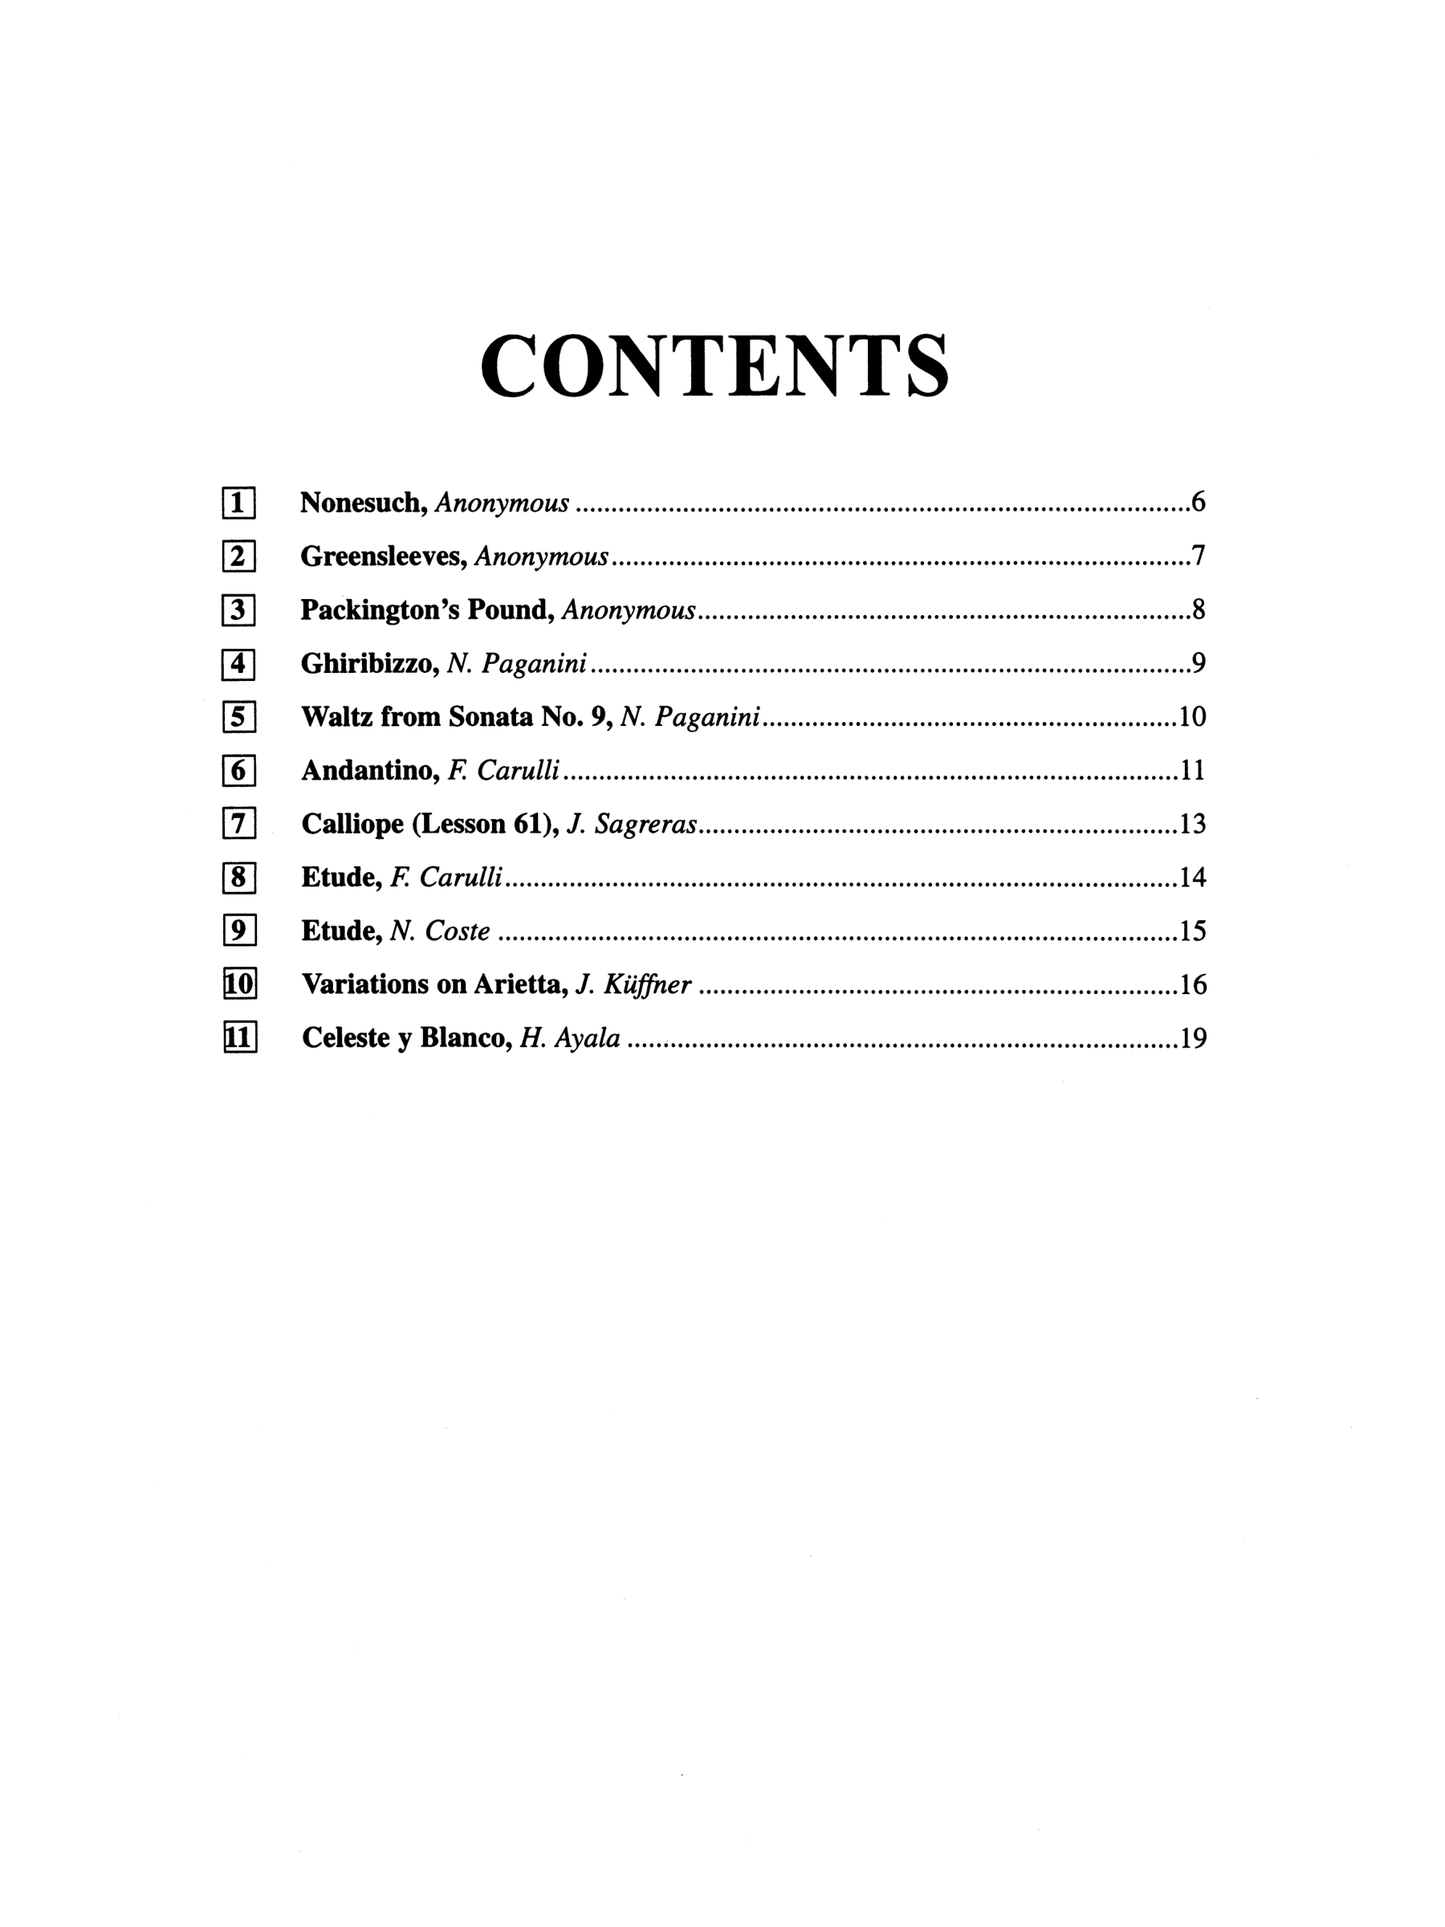 Suzuki Guitar School - Volume 3 Guitar Part Book (International Edition)